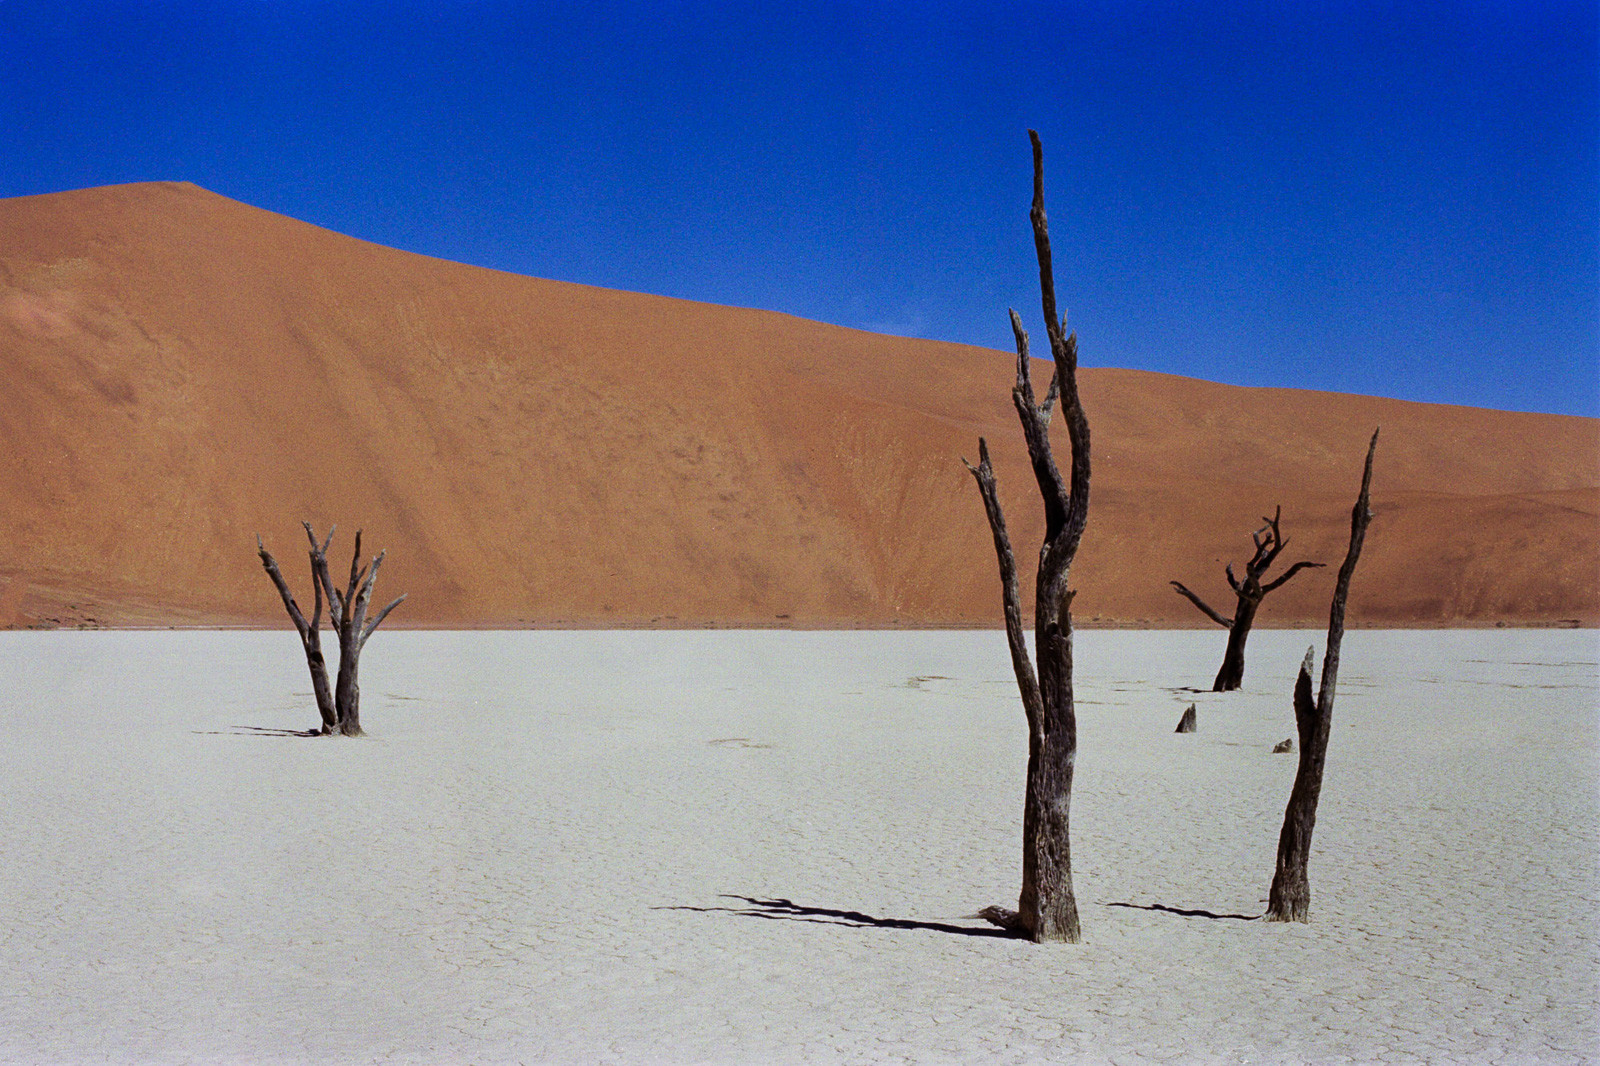 namibia desert scene in deadvlei dead trees in salt pan